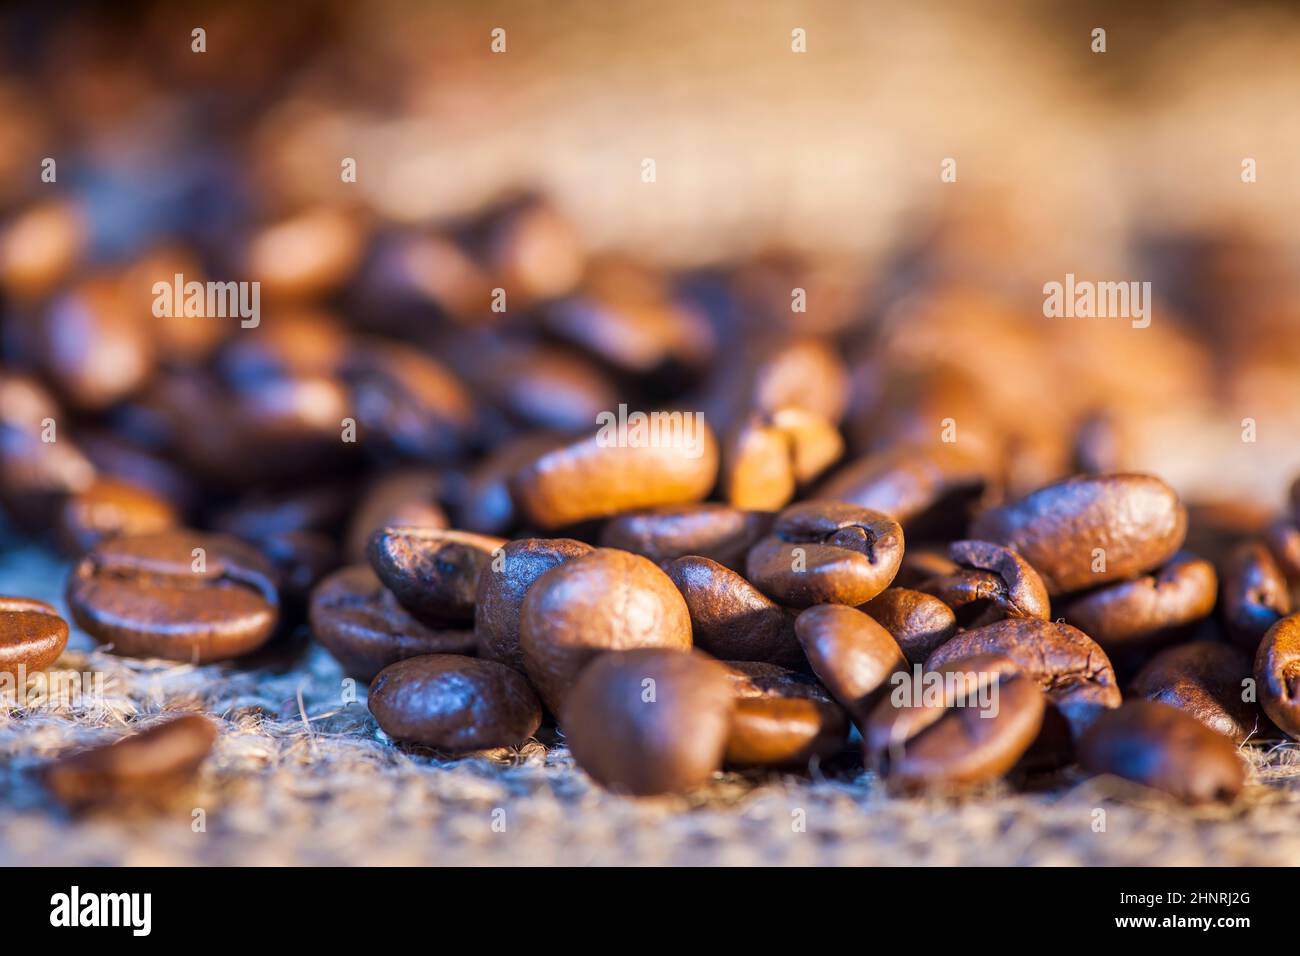 Gros plan de grains de café fraîchement torréfiés saupoudés d'un sac de toile de jute avec une faible profondeur de champ. Banque D'Images